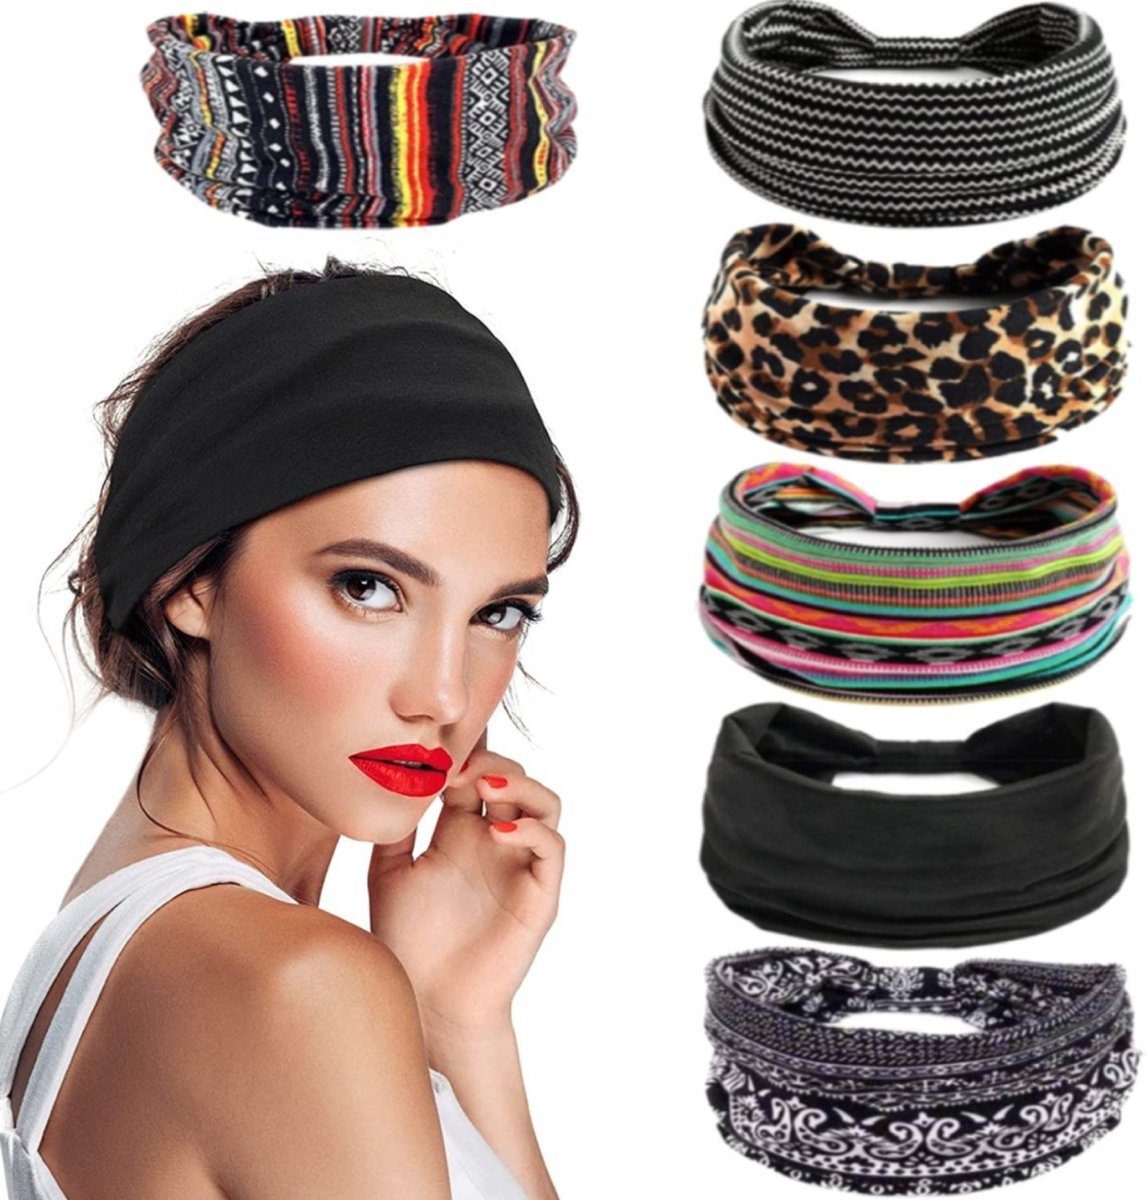 BOTC Stirnband Damen Boho Stirnbänder Kopfband elastisch weich (6-teiliges Set, Sport Yoga Haarbändern) Haarband, Damenhaarbänder – 23*10CM, 6 Farbmischungen